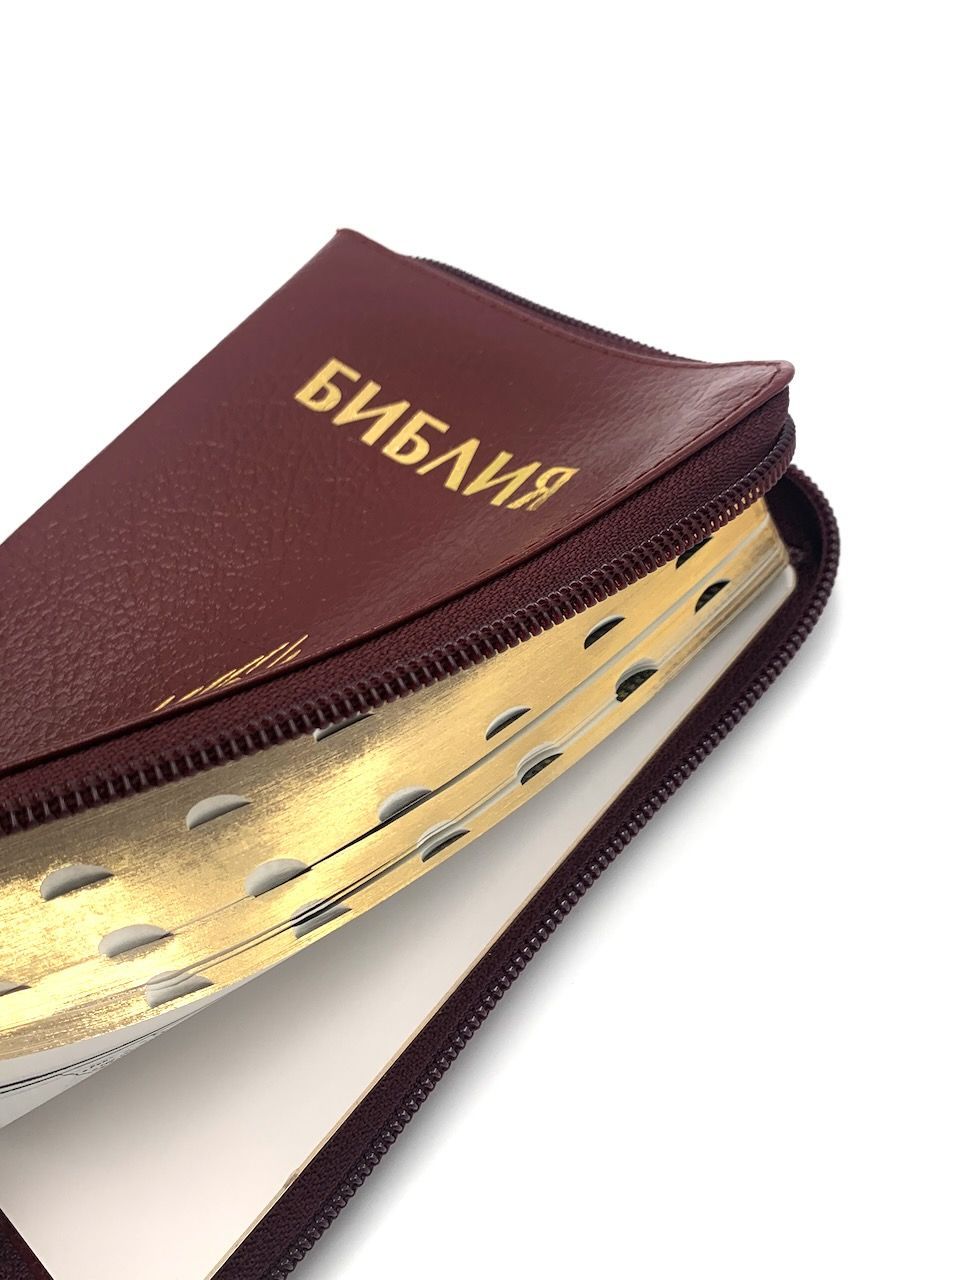 Библия 046zti формат, дизайн колос, цвет бордо, кожаный переплет на молнии с индексами, золотые страницы, размер 115*168 мм, размер шрифта 10-11 кегель